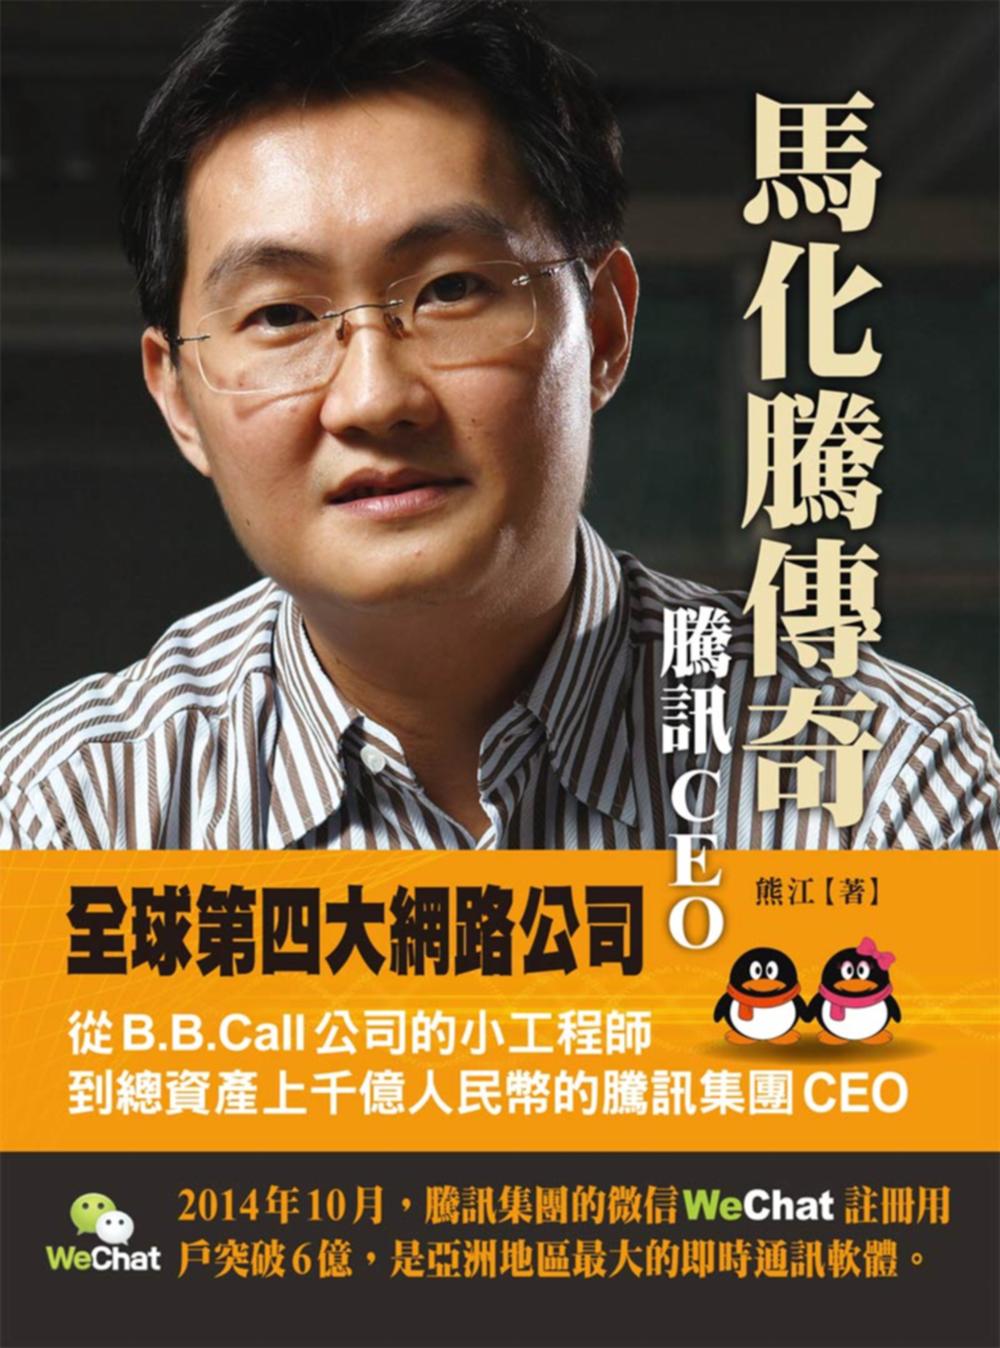 騰訊CEO 馬化騰傳奇